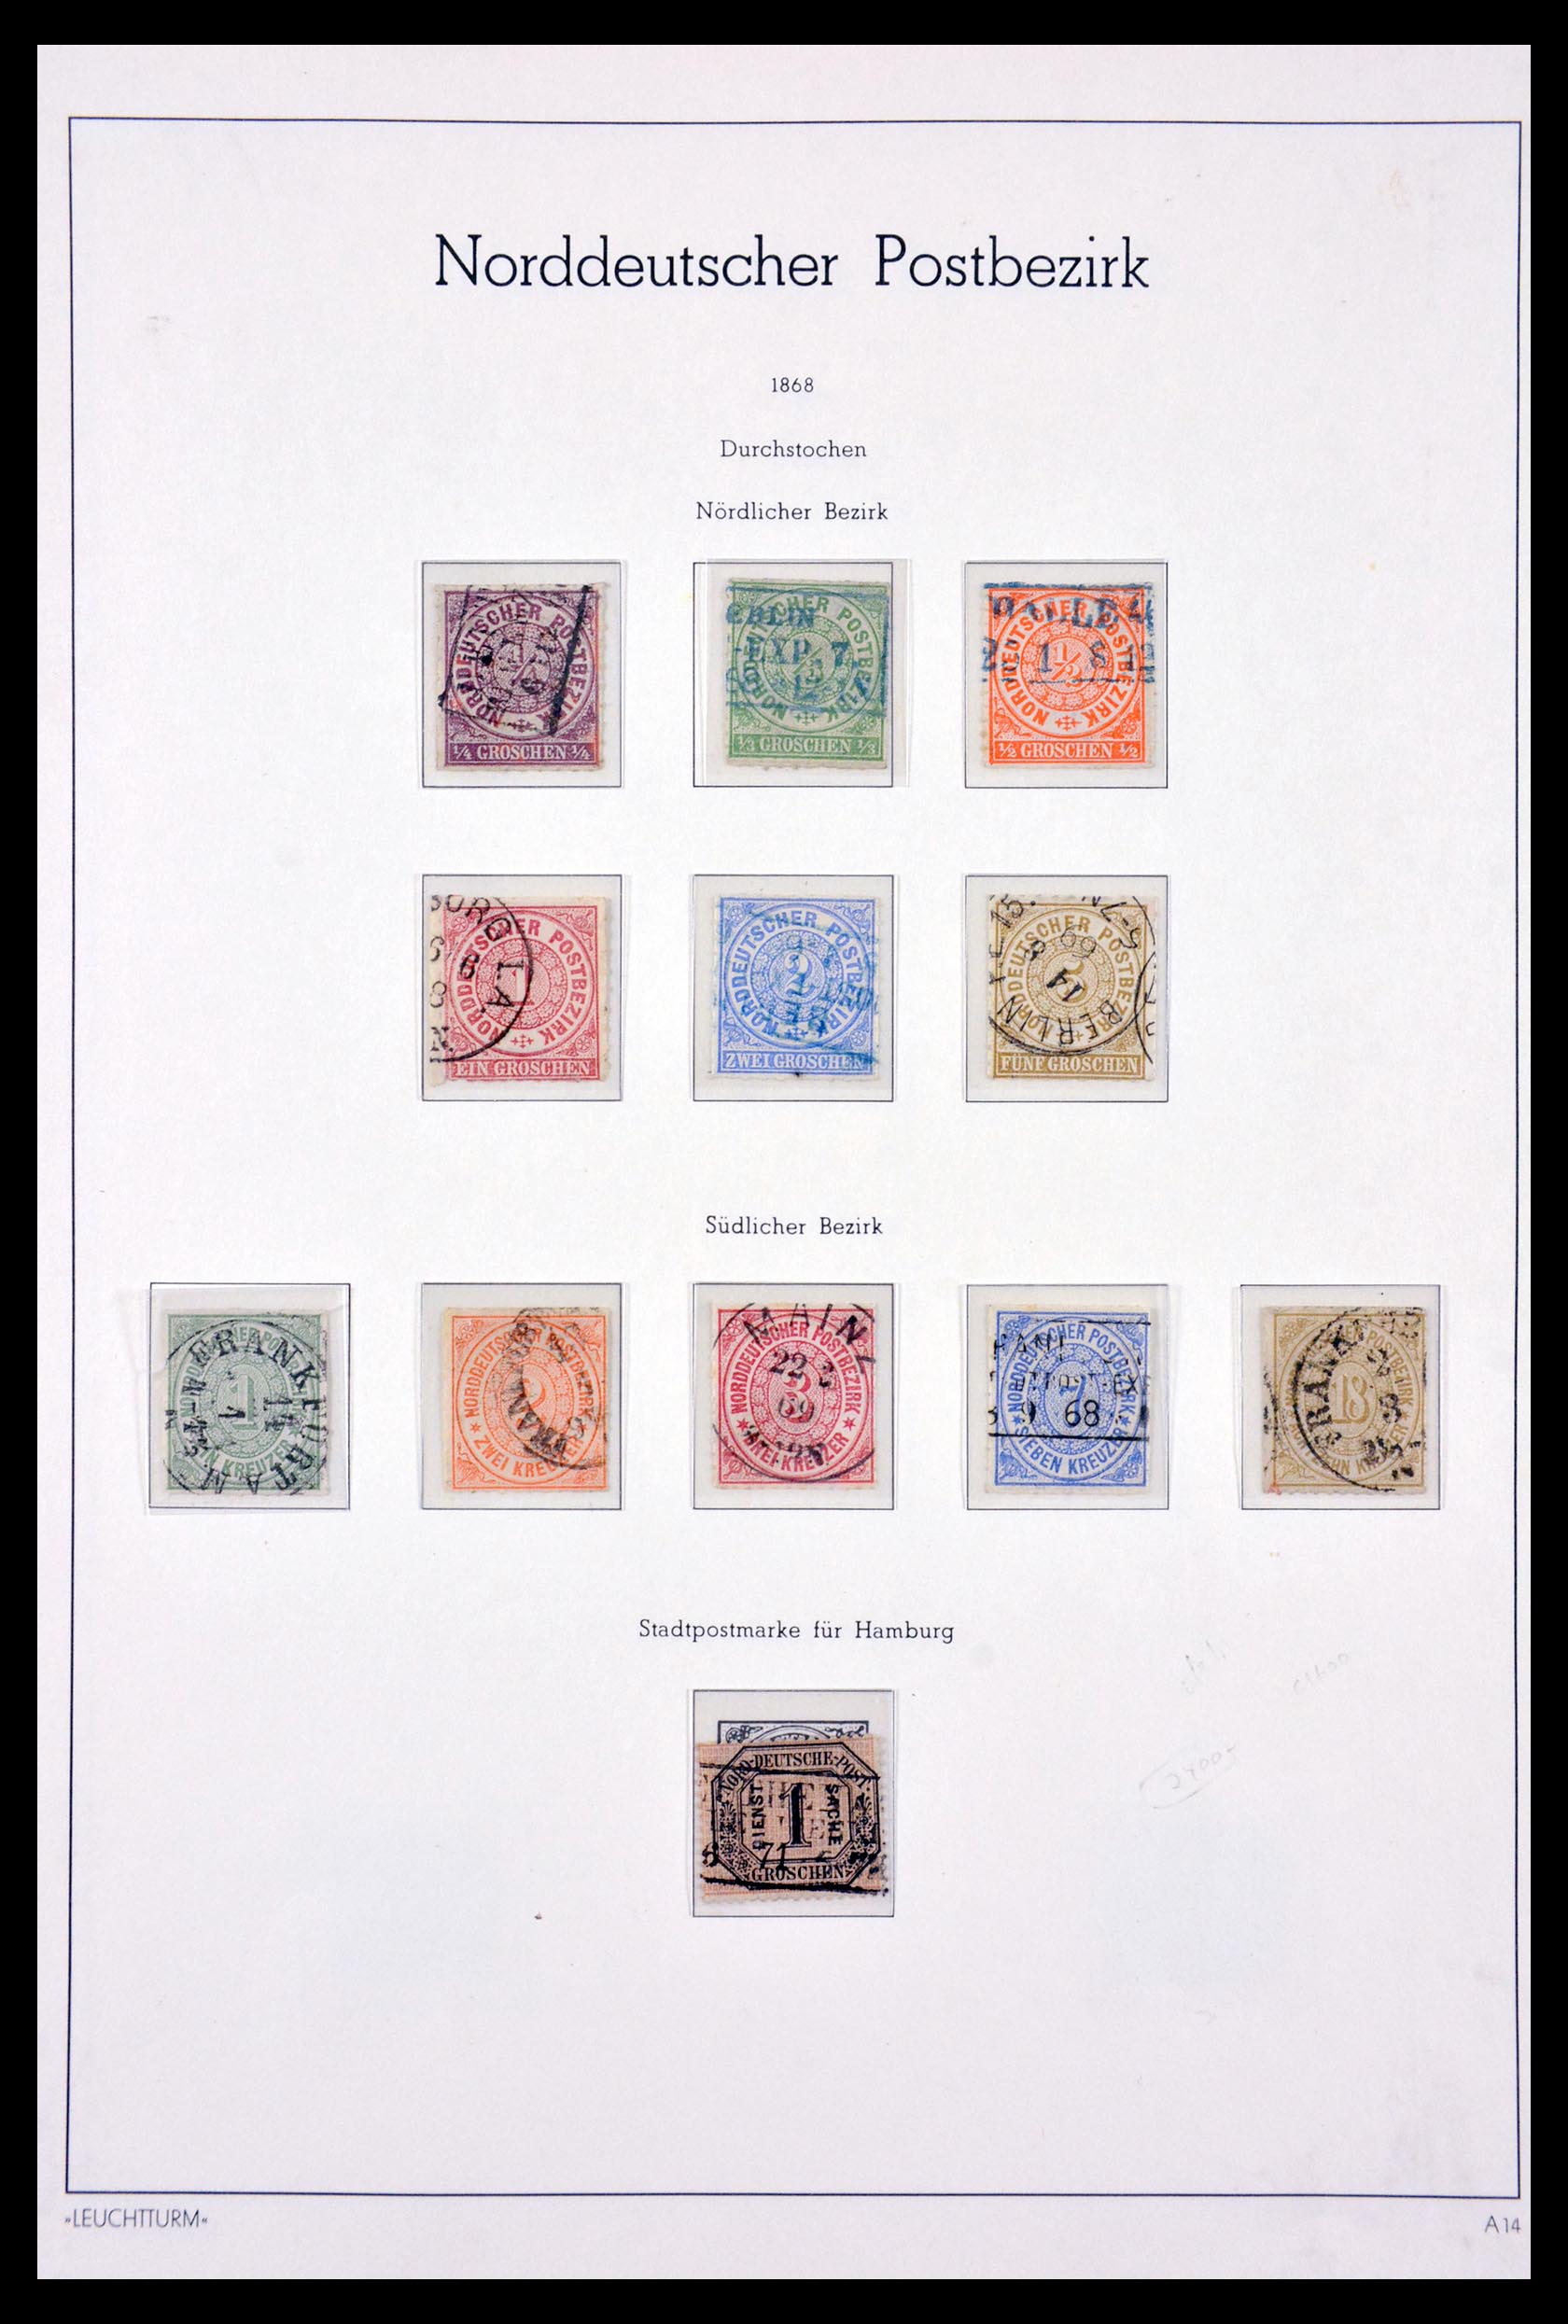 29641 001 - 29641 Norddeutscher Postbezirk 1868-1875.